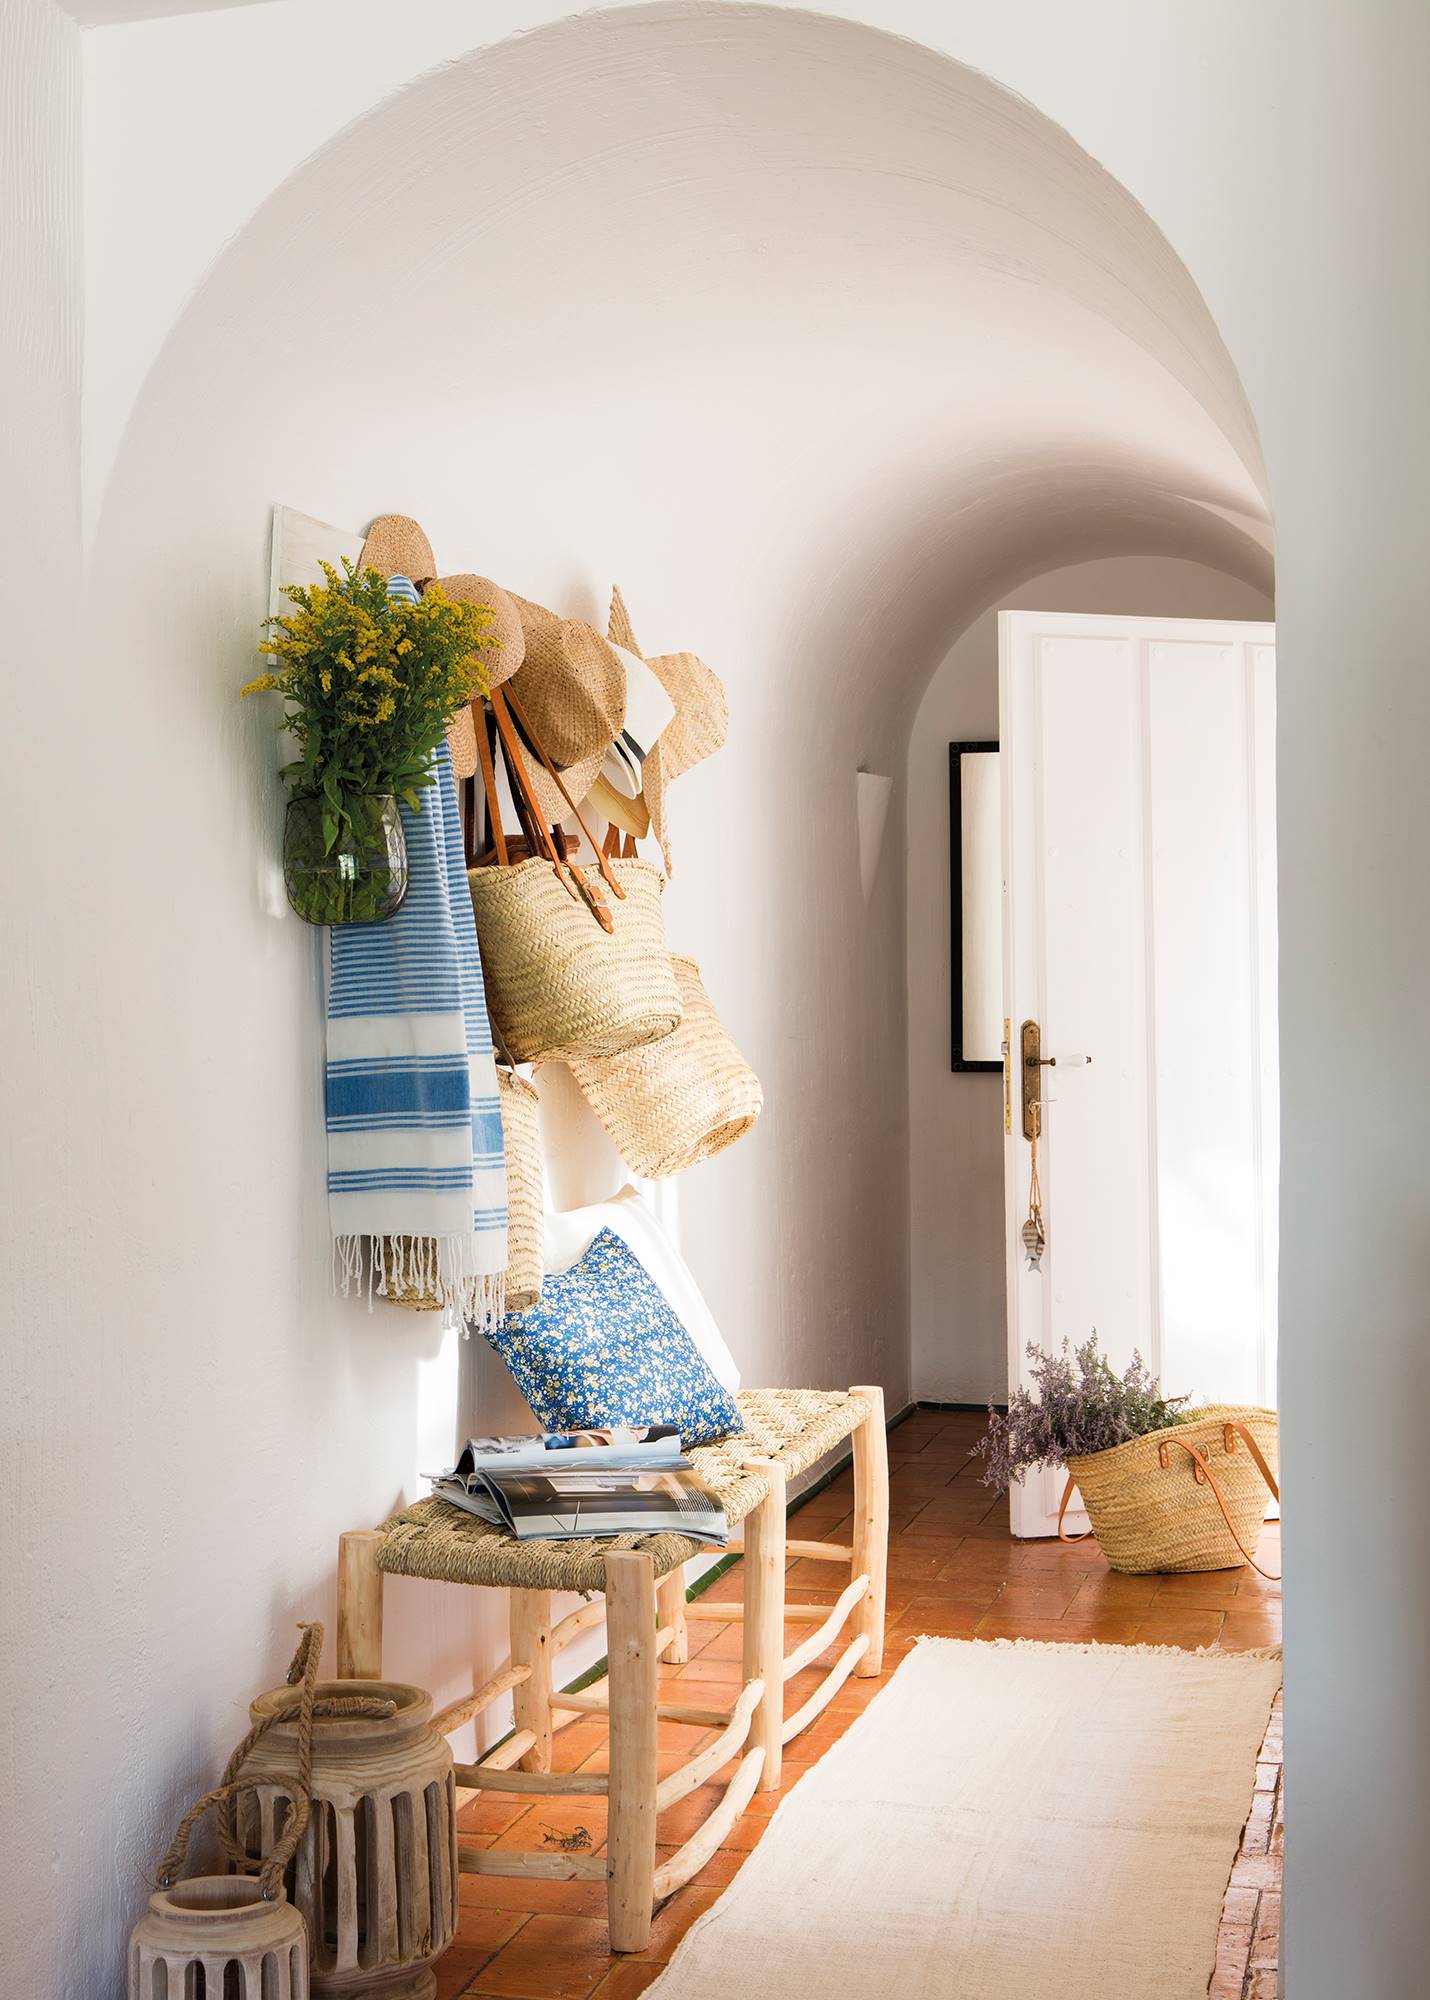 Recibidor de verano con banco de fibras naturales, alfombra pasillera y cestas 00460998b